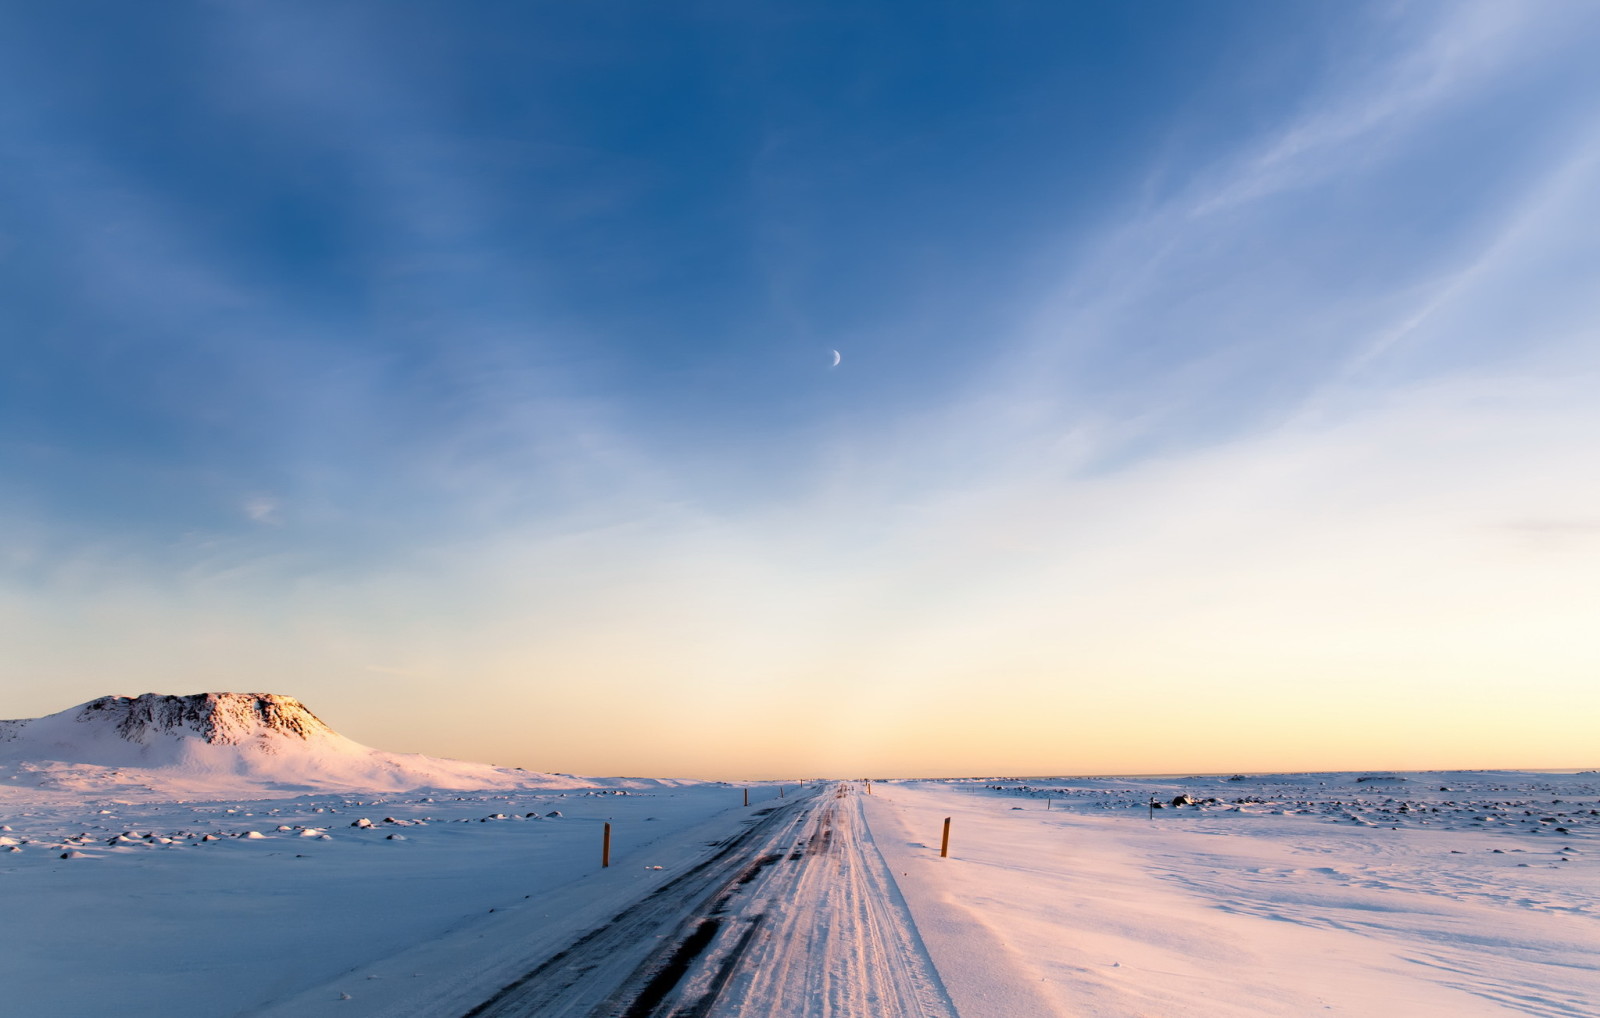 ท้องฟ้า, ฤดูหนาว, ถนน, ตอนเช้า, ดวงจันทร์, ประเทศไอซ์แลนด์